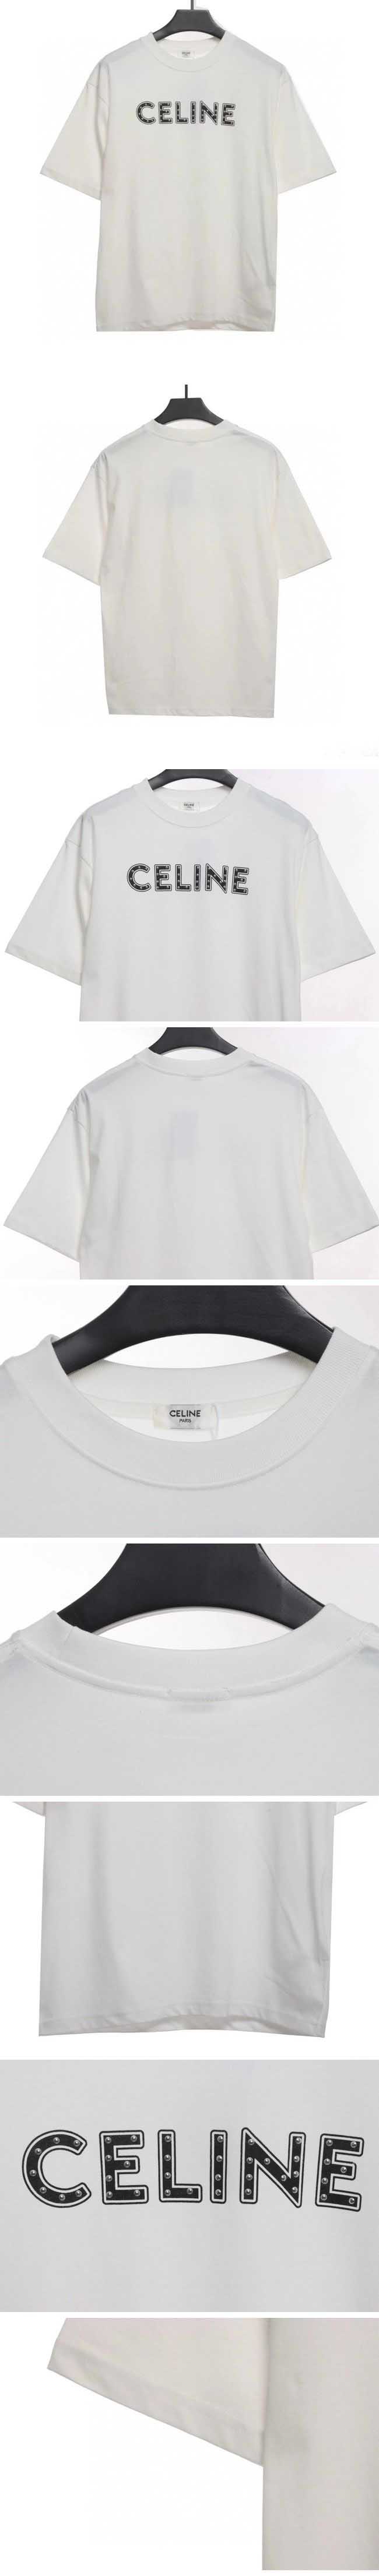 Celine Studded Logo Tee White セリーヌ スタッズロゴ Tシャツ ホワイト